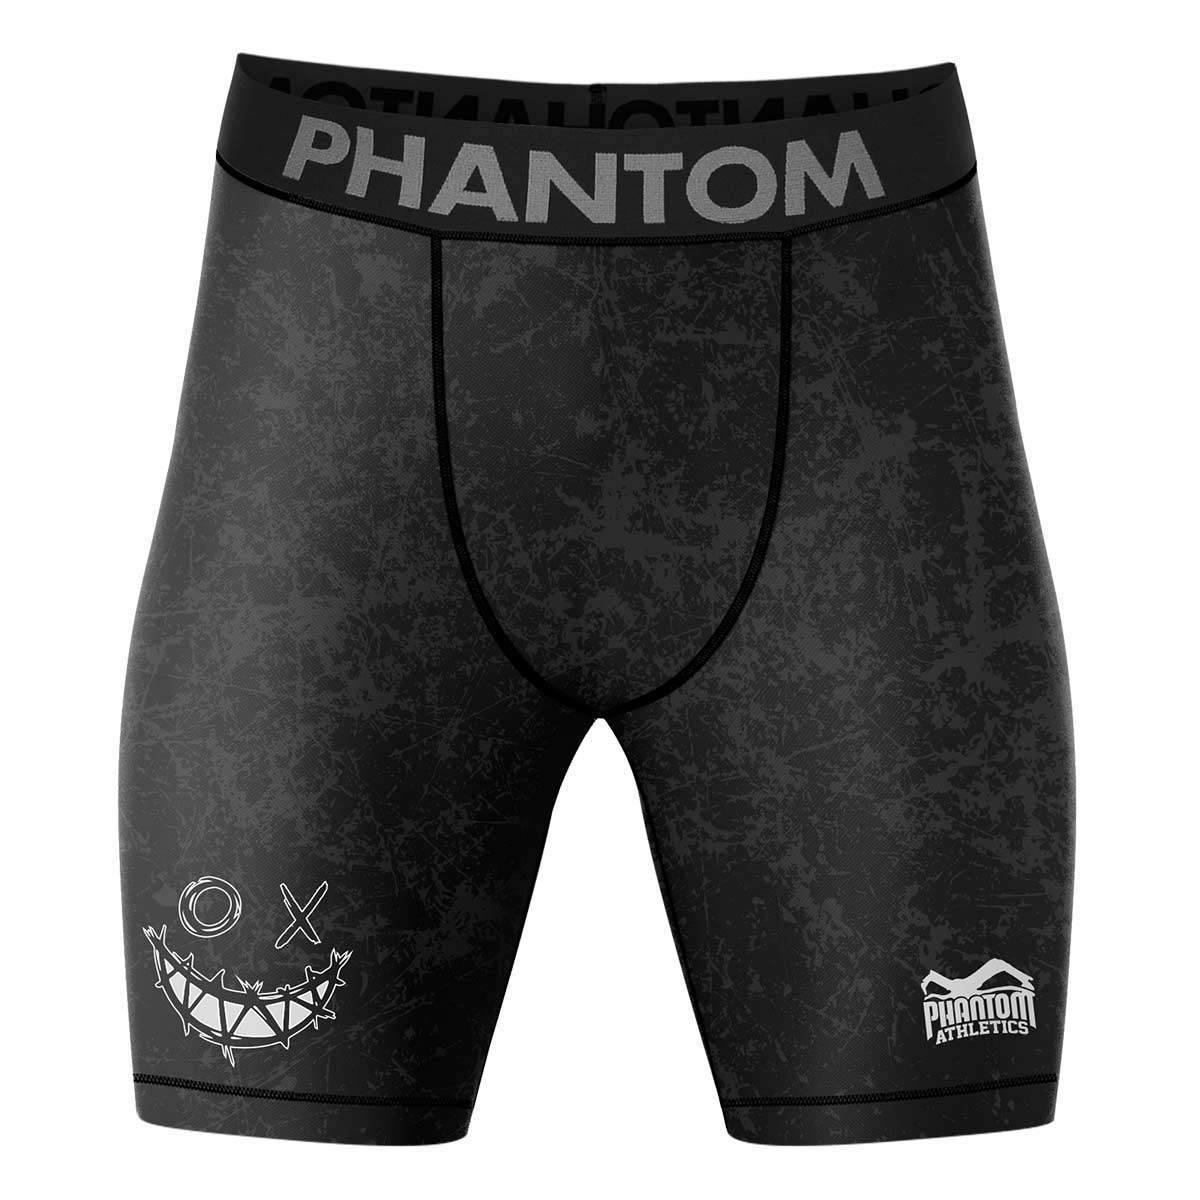 Phantom Vector Compression Fightshorts im Smiley Serious Design und mit hervorragender Passform.